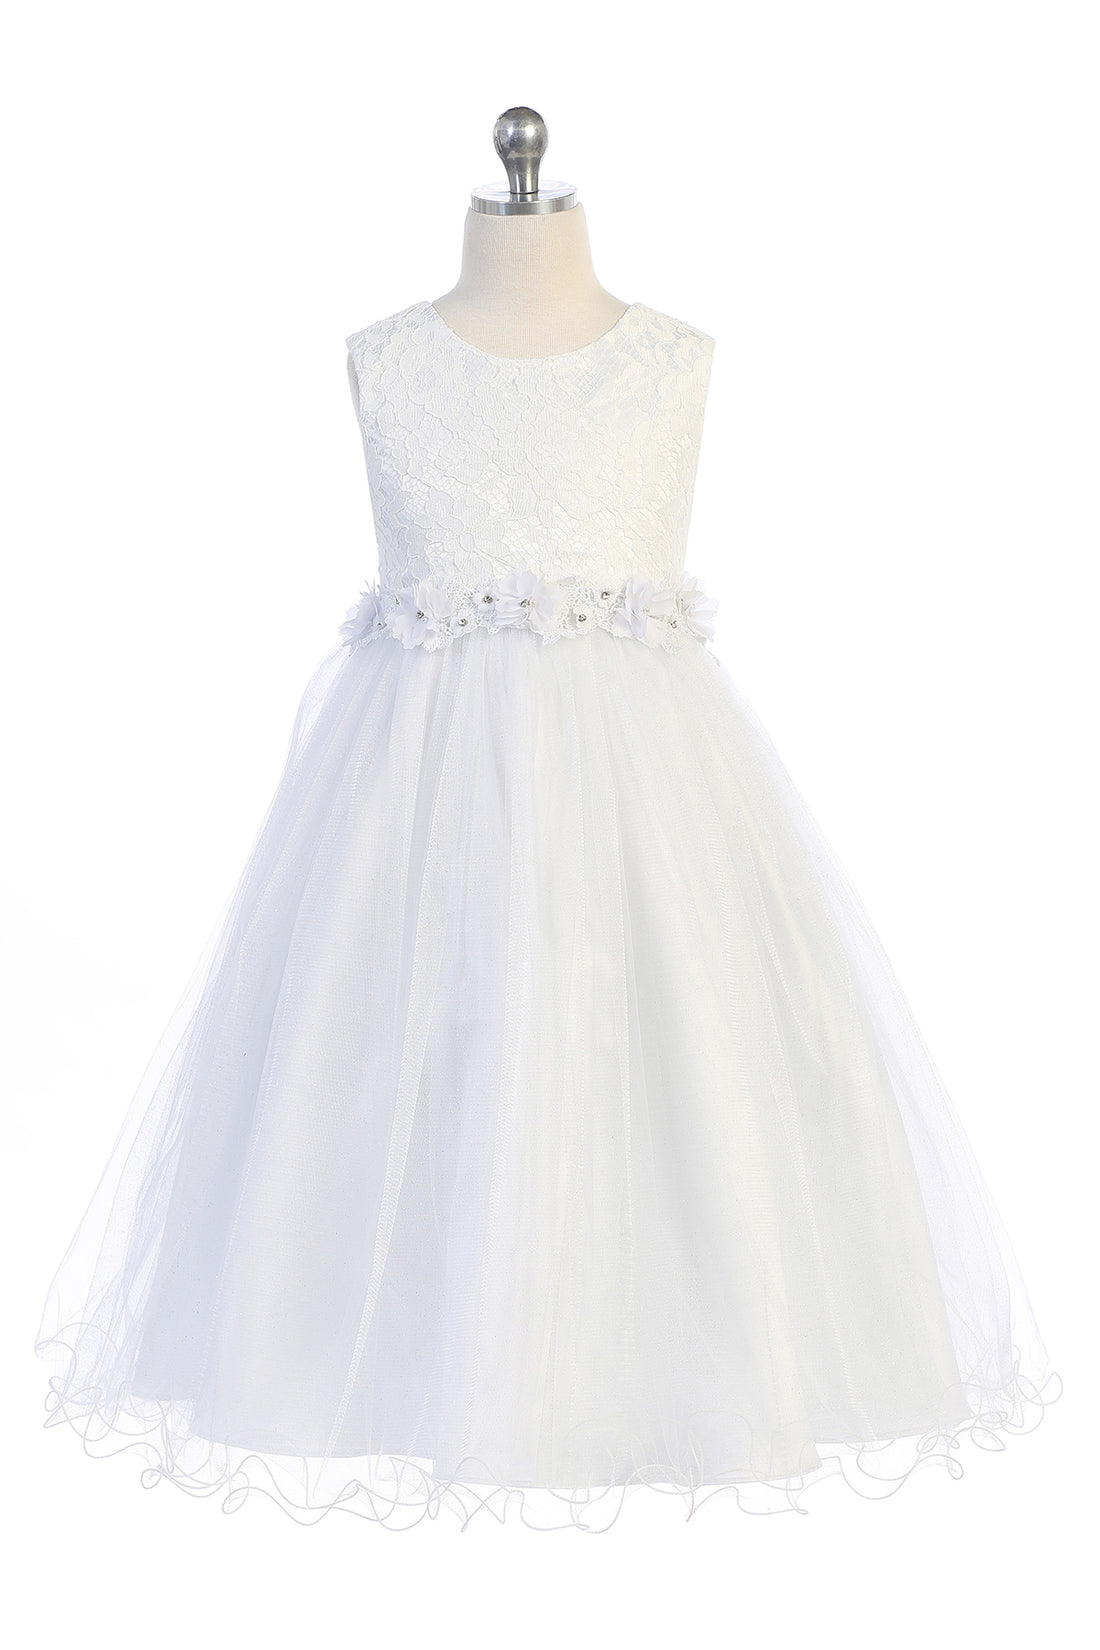 Lace Glitter Tulle Flower Girl Dress by AS468 Kids Dream - Girl Formal Dresses